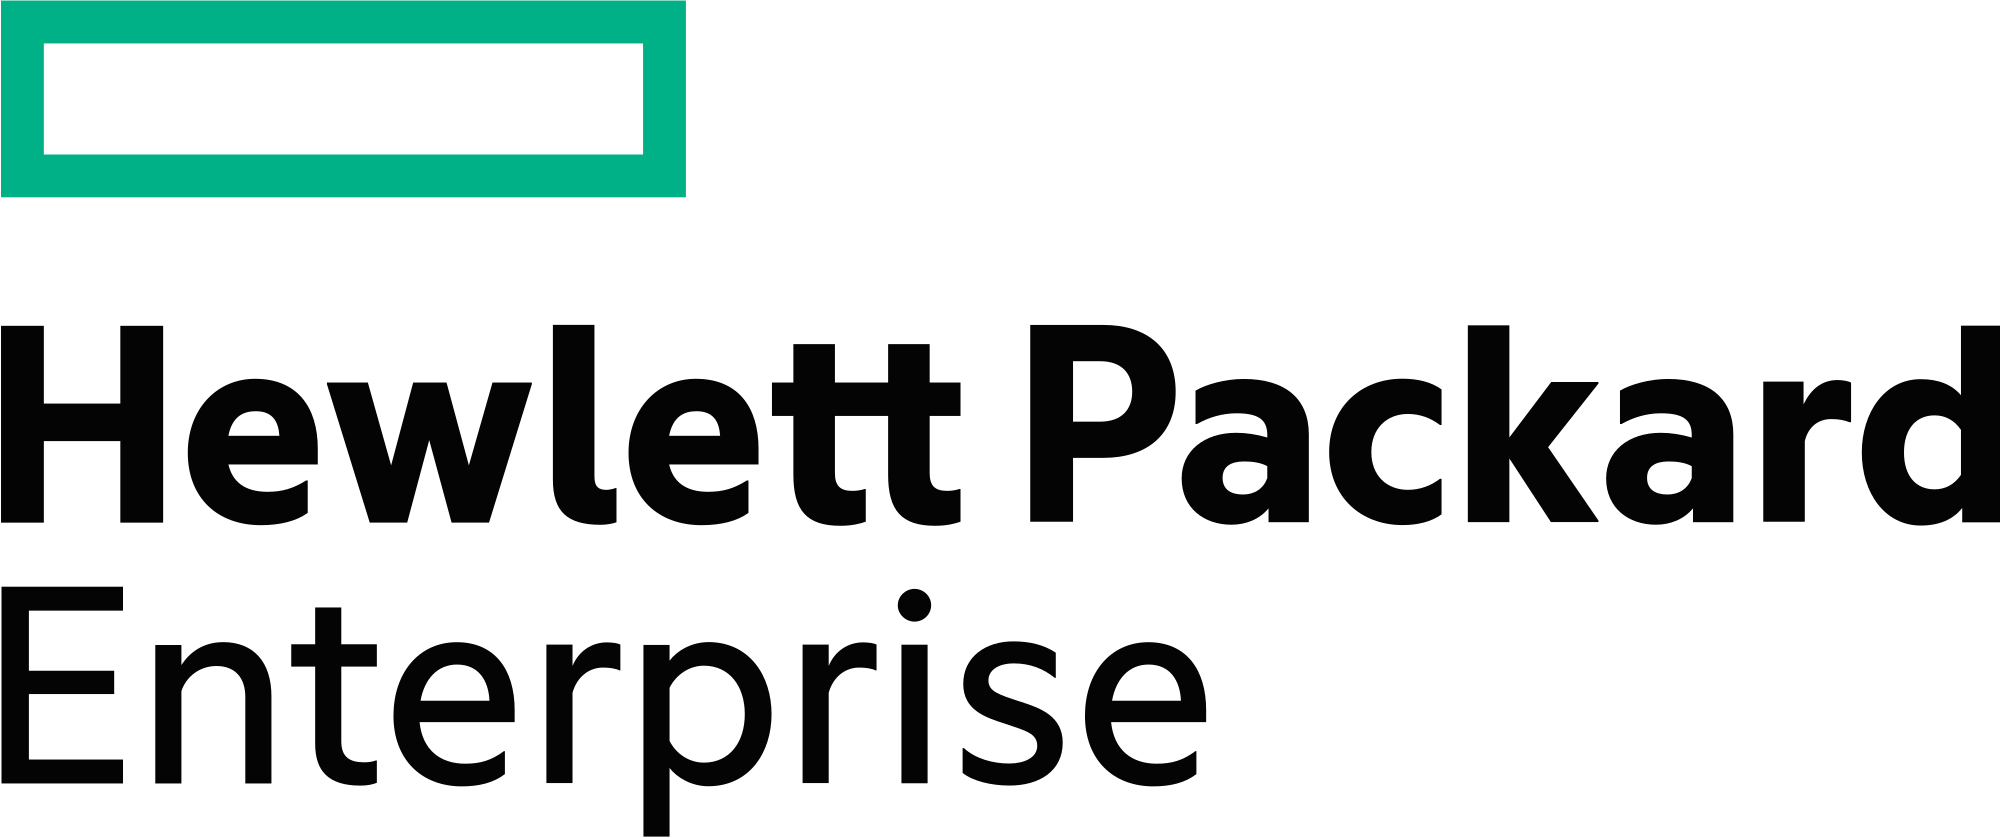 Image result for hewlett packard enterprise logo